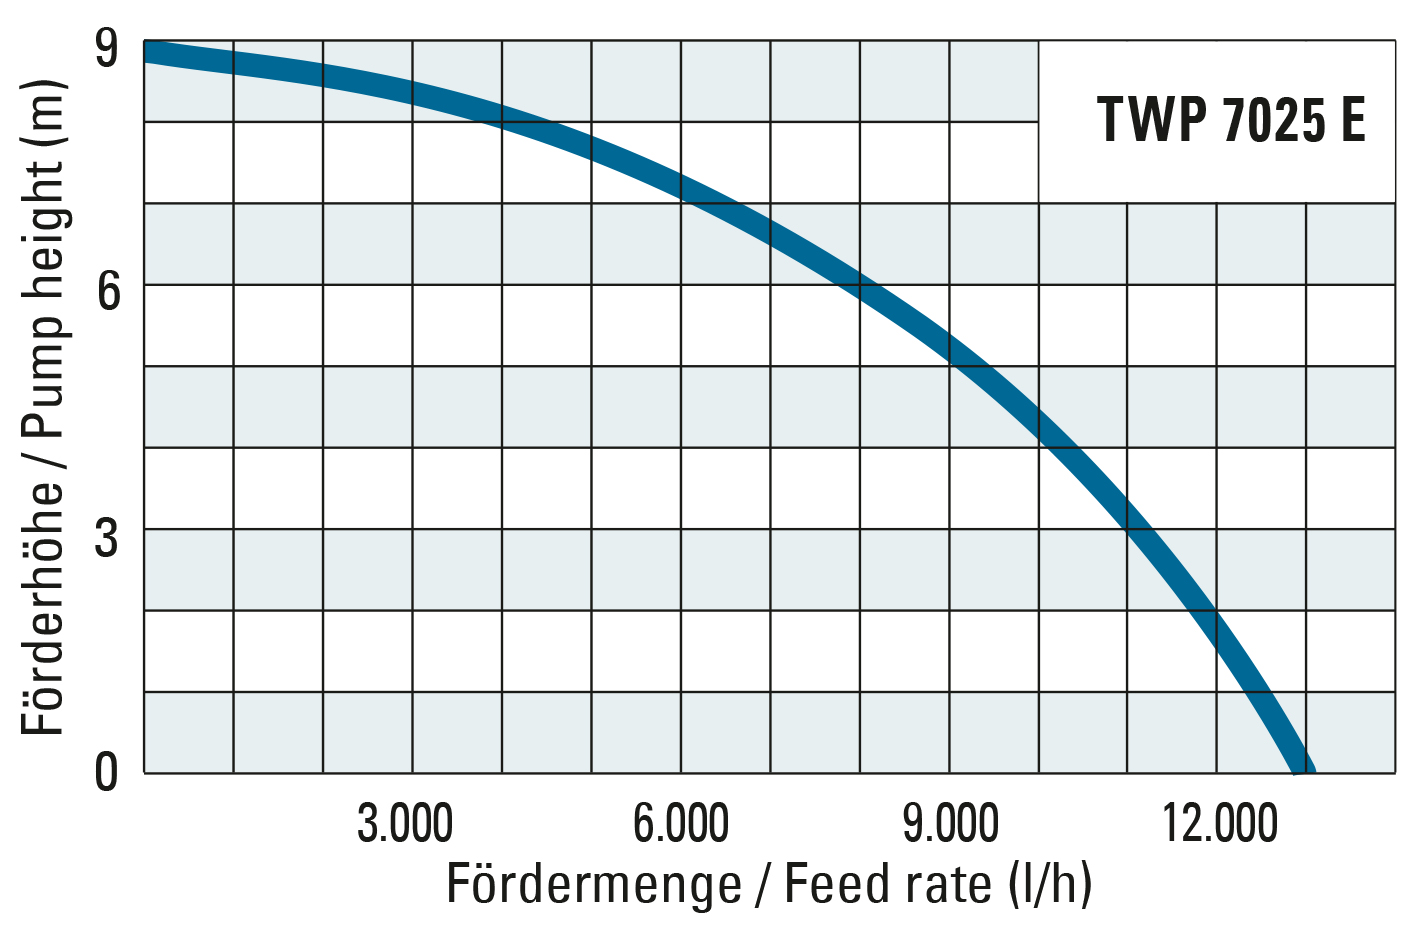 NEU Klarwasser-Tauchpumpe TWP 4006 E: flachabsaugende Pumpe mit maximal  7.300 l/h für wischtrockene Ergebnisse – mit einstellbarer Absaughöhe –  Trotec Blog